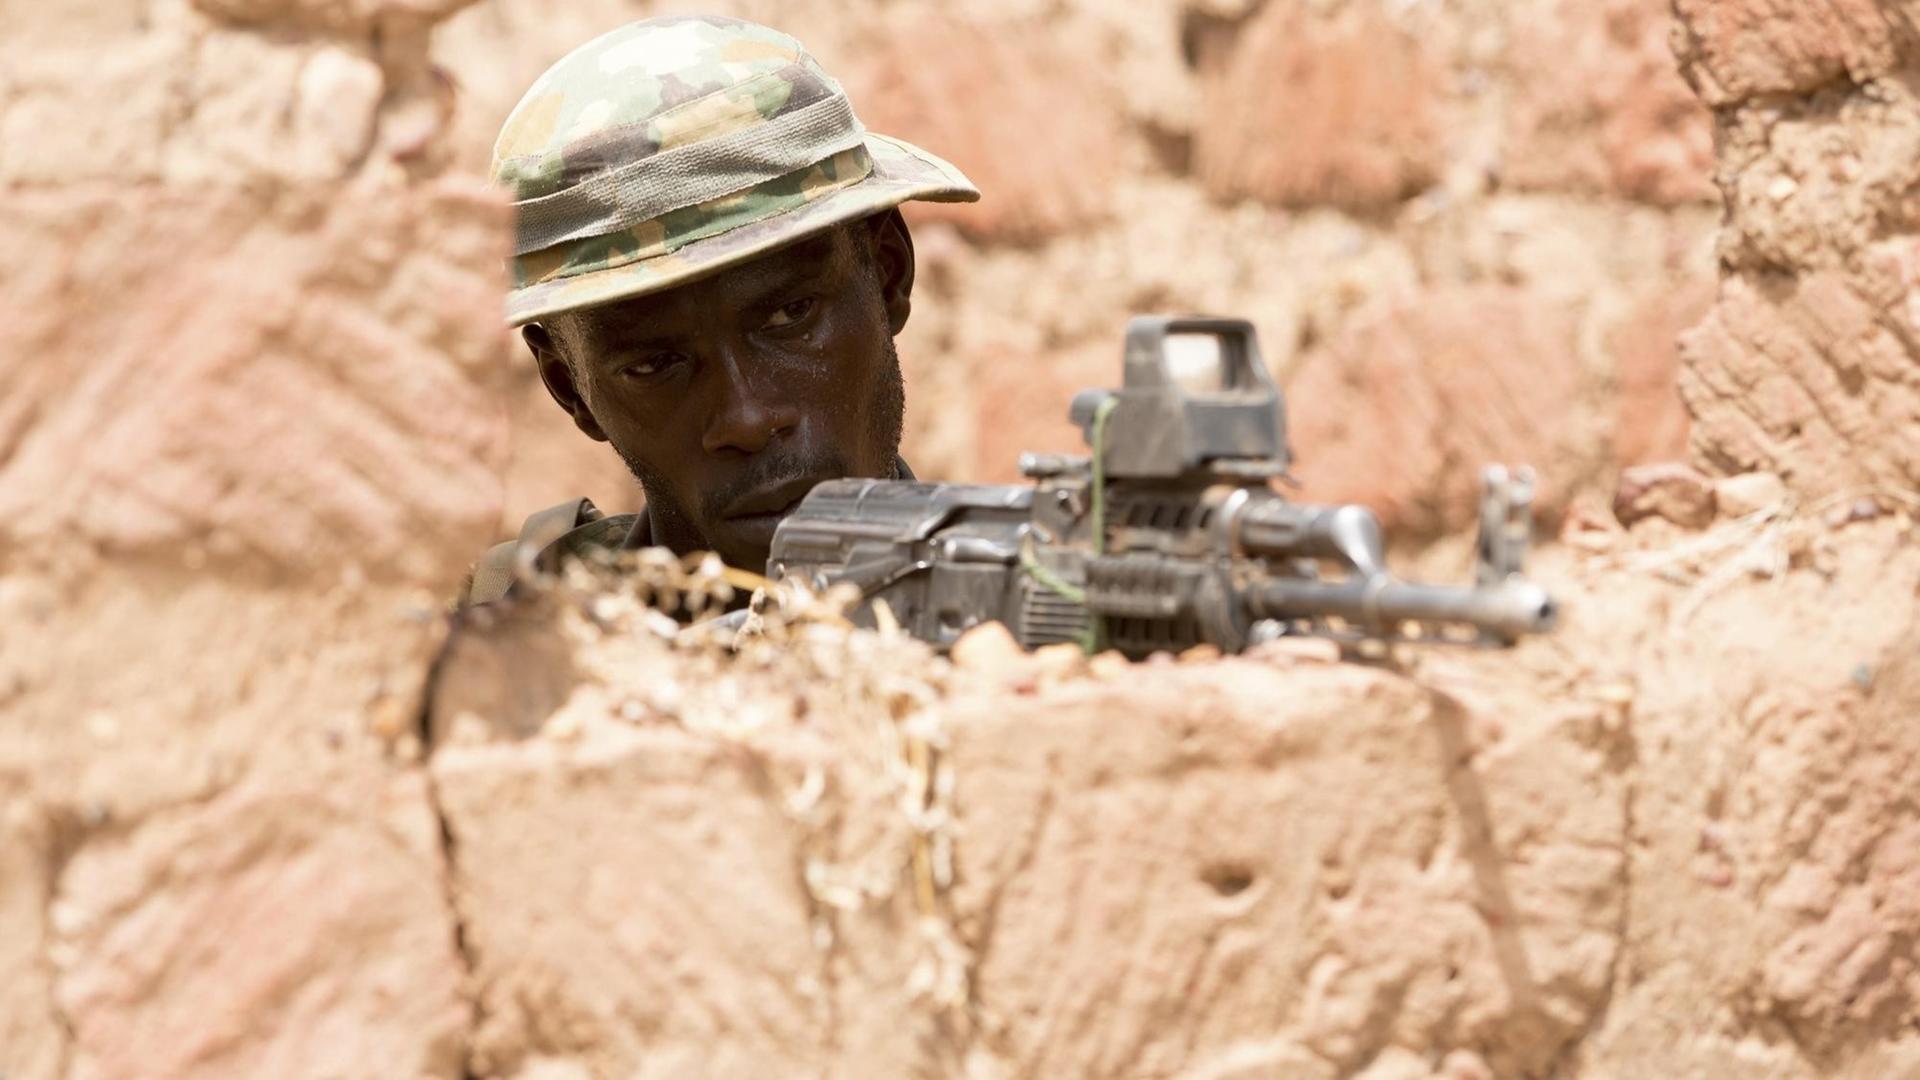 Ein nigrischer Soldat bei einem Kampf-Training in einem Dorf. Februar 2019 in Bobo-Dioulasso, Burkina Faso